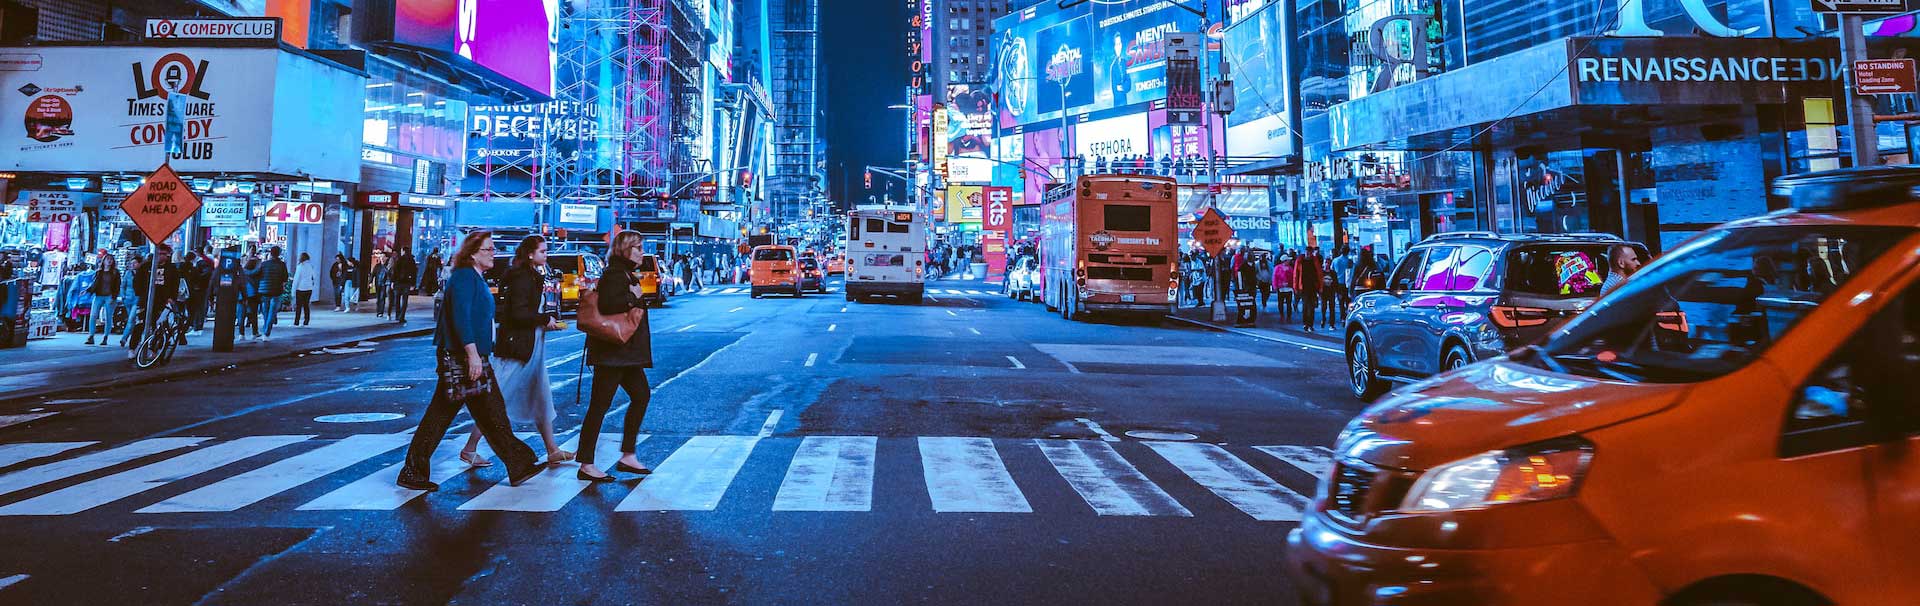 New York City Times Square persone sulle strisce pedonali